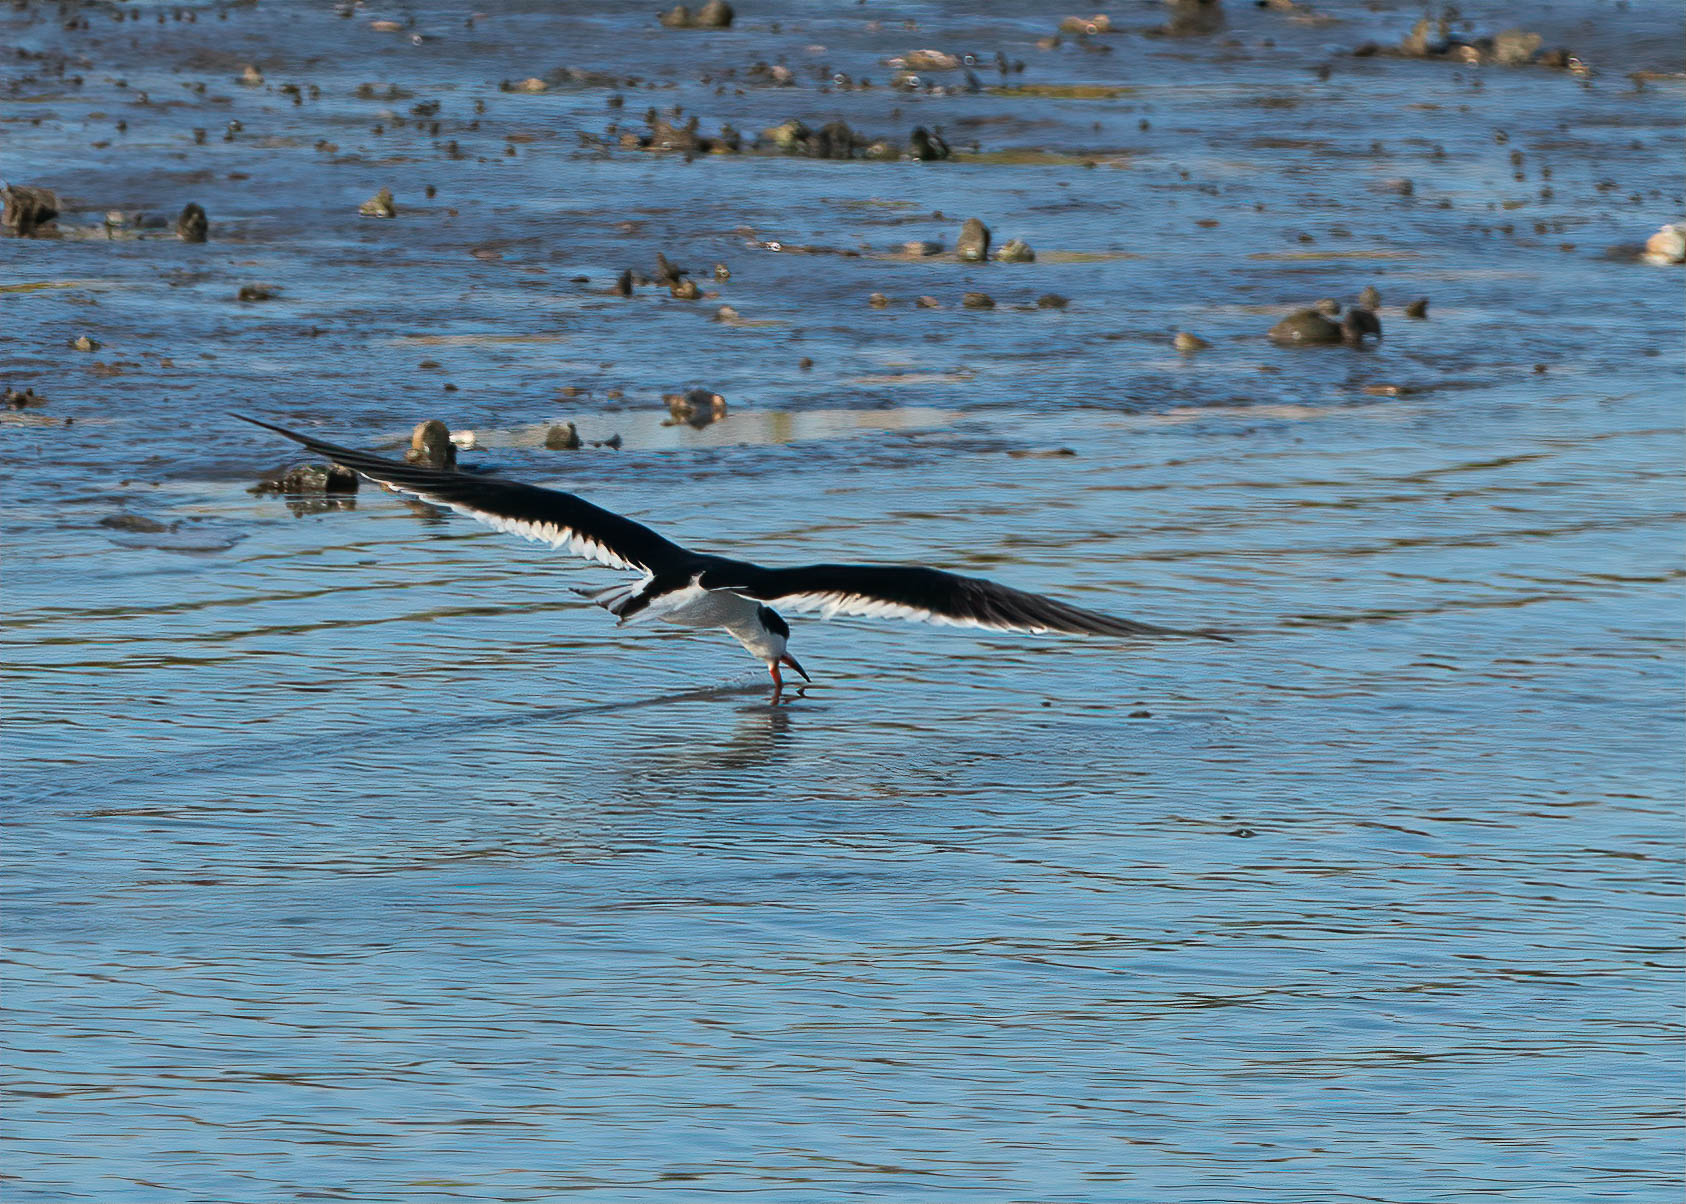 Black Skimmer skimming.